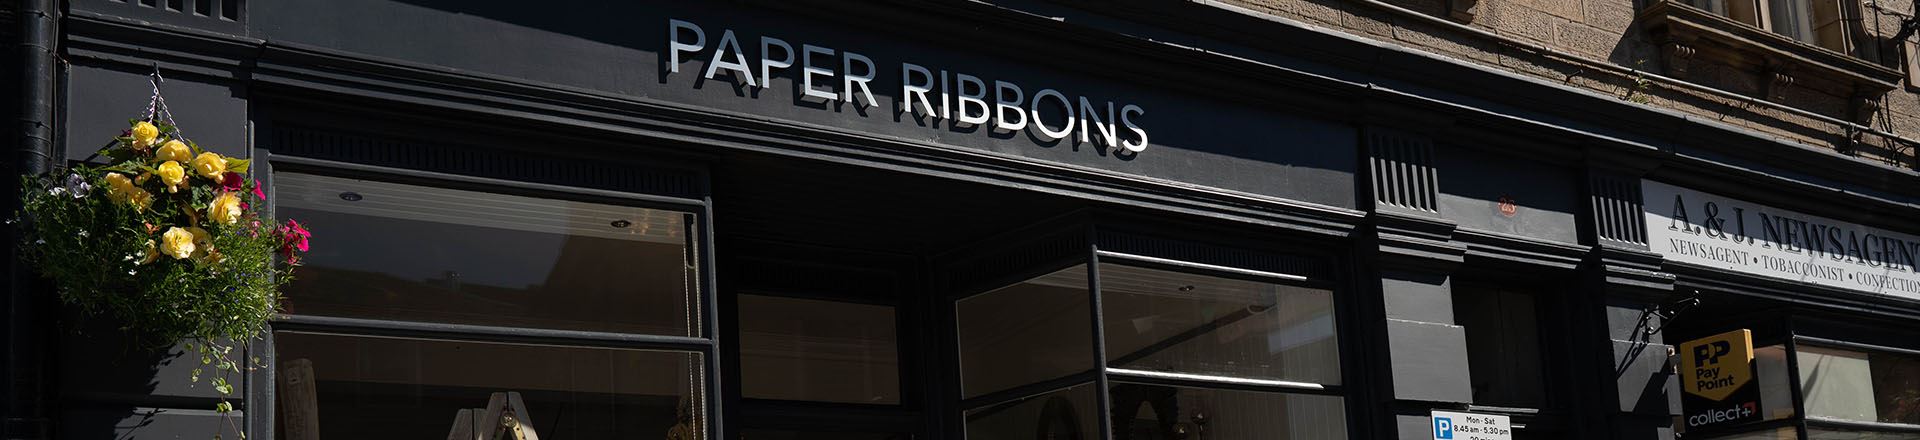 Paper Ribbons Shopfront